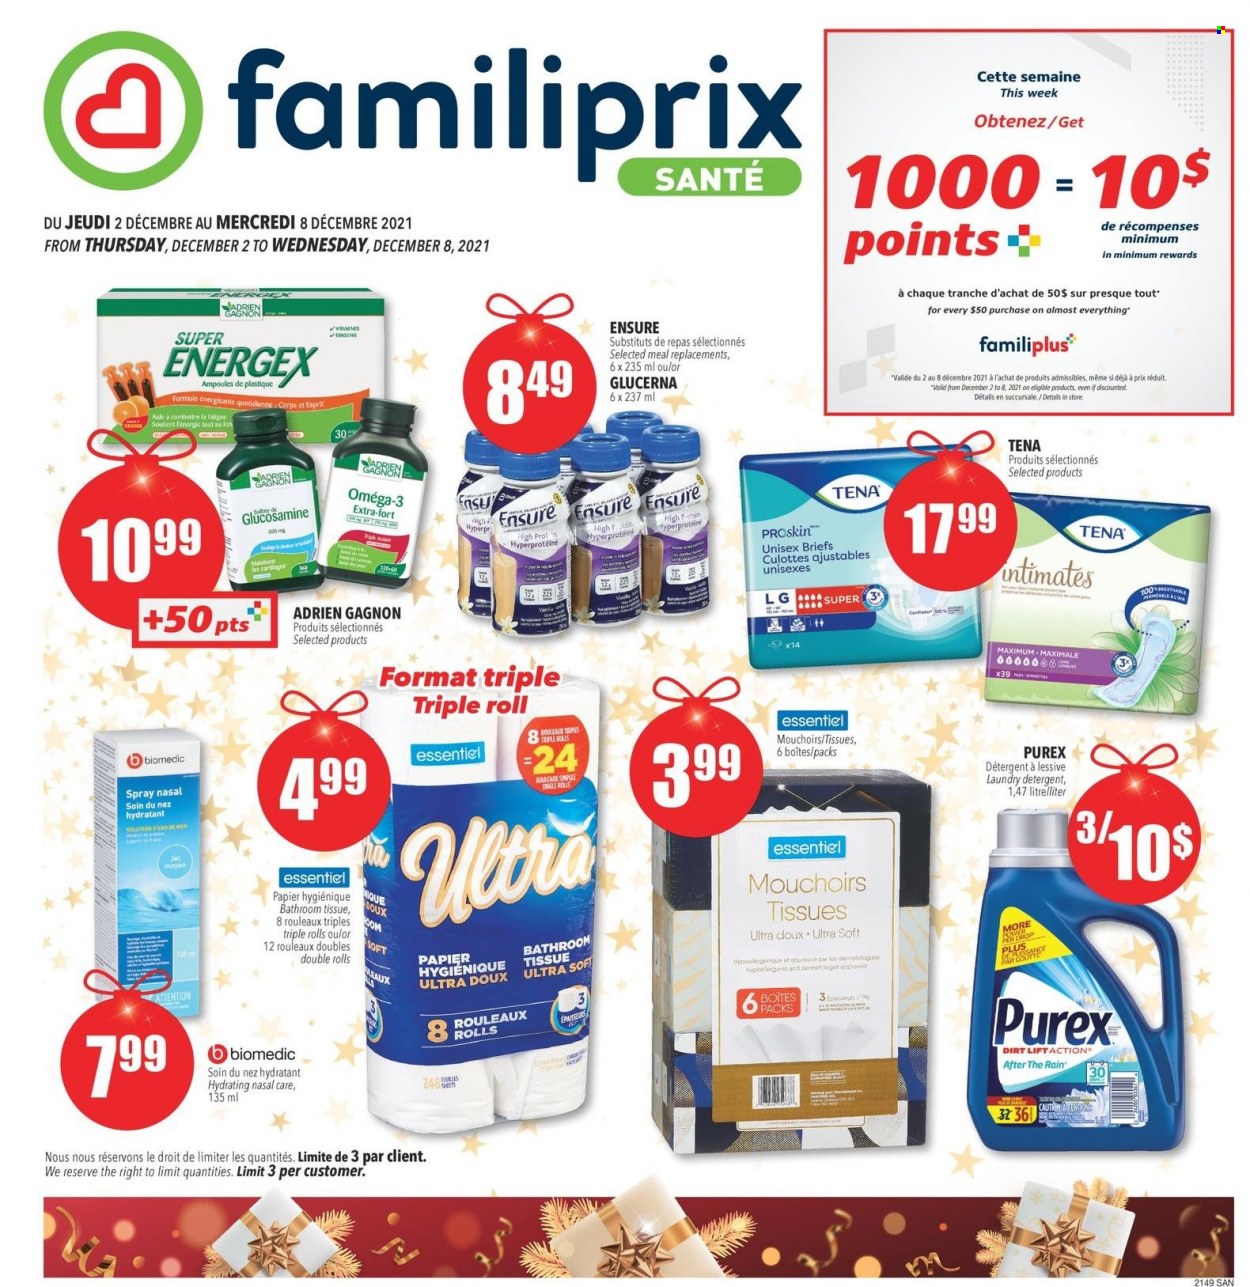 Familiprix Santé flyer  - December 02, 2021 - December 08, 2021.